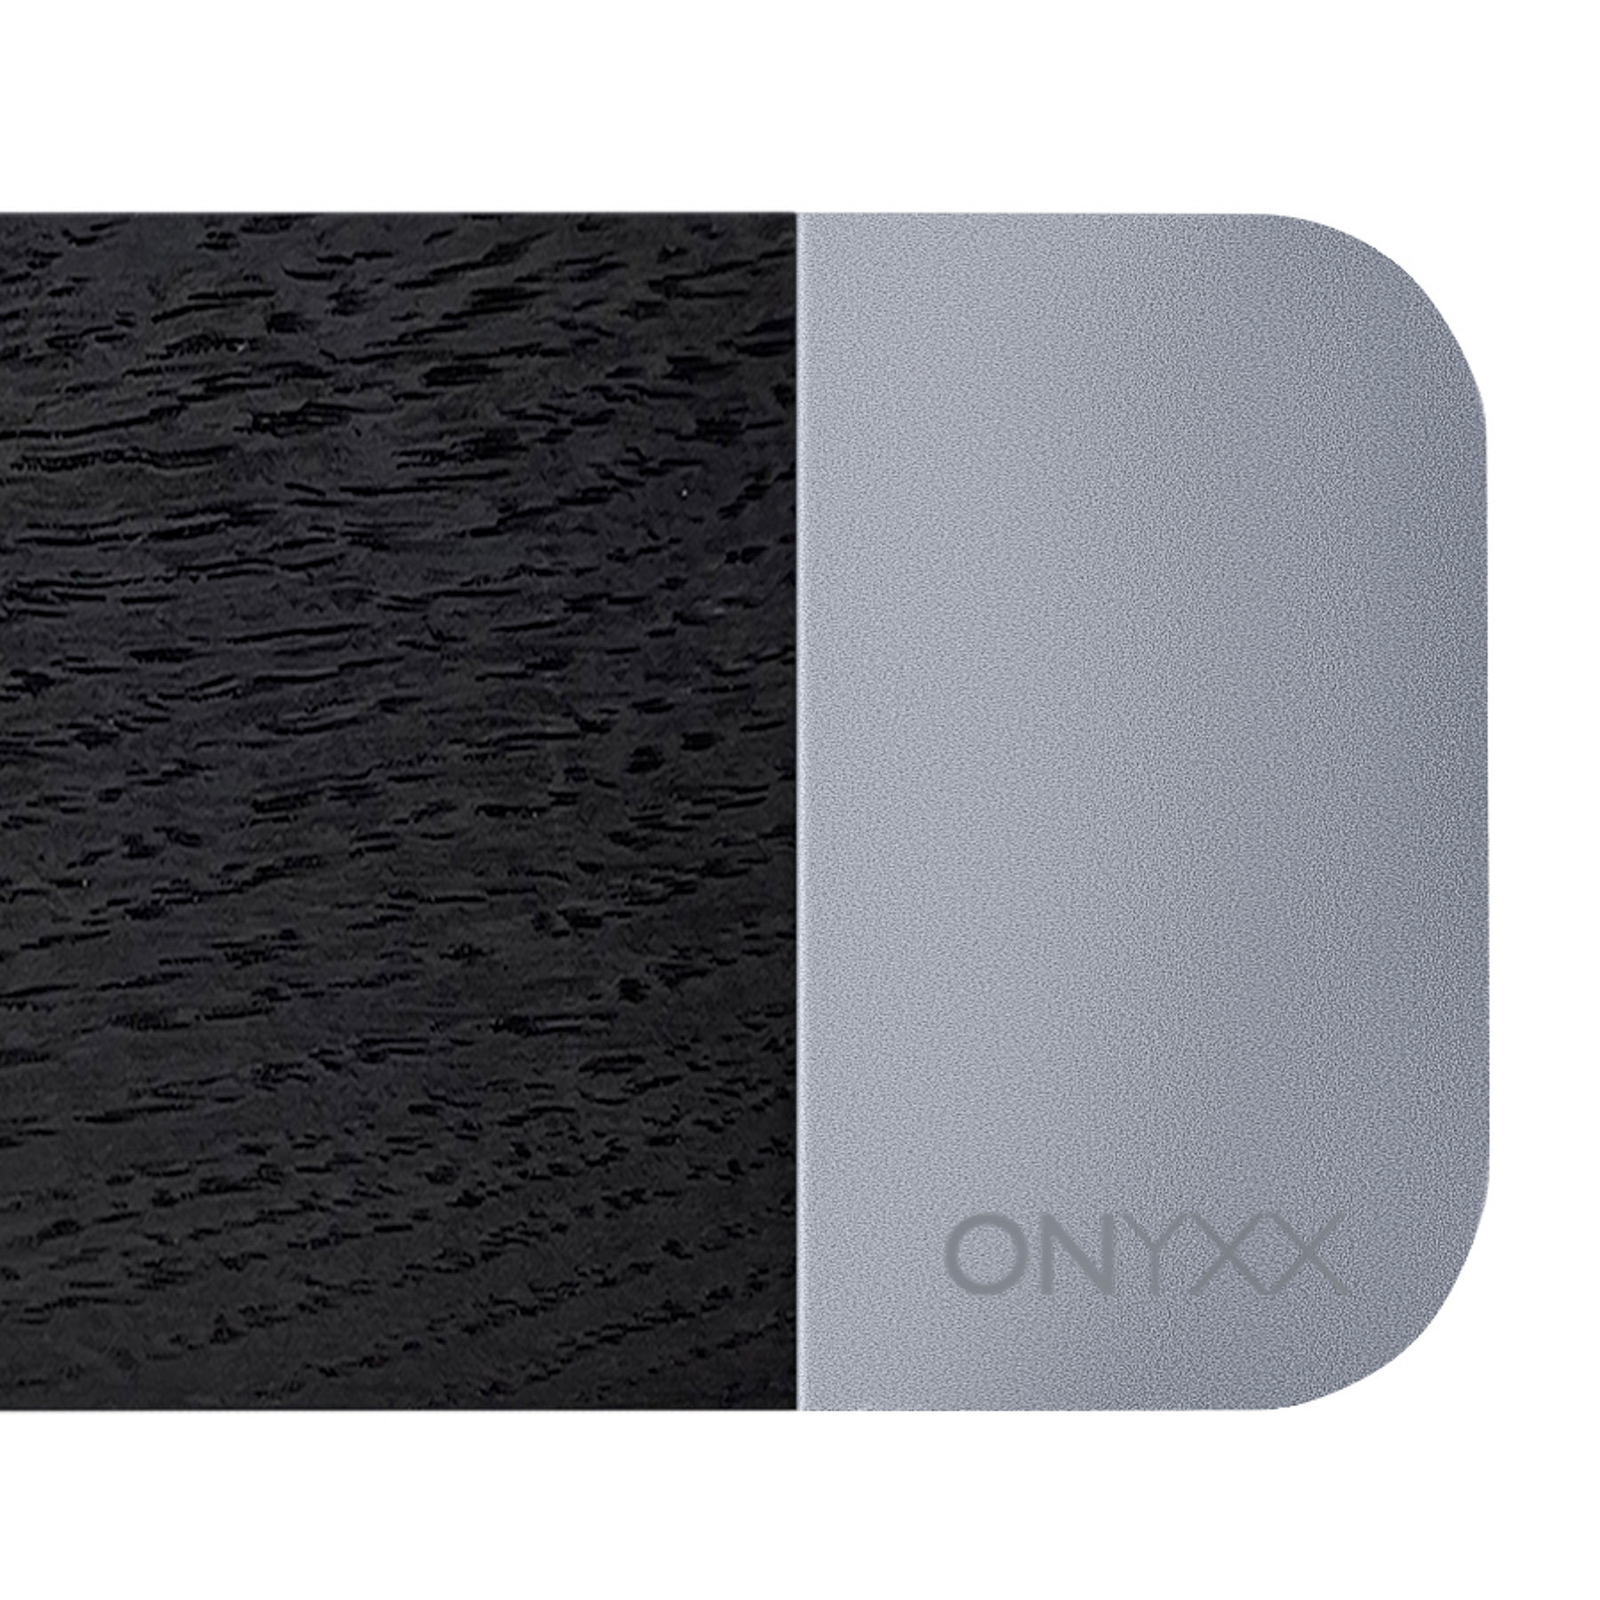 GRIMMEISEN Onyxx Linea Pro péndulo roble/plata